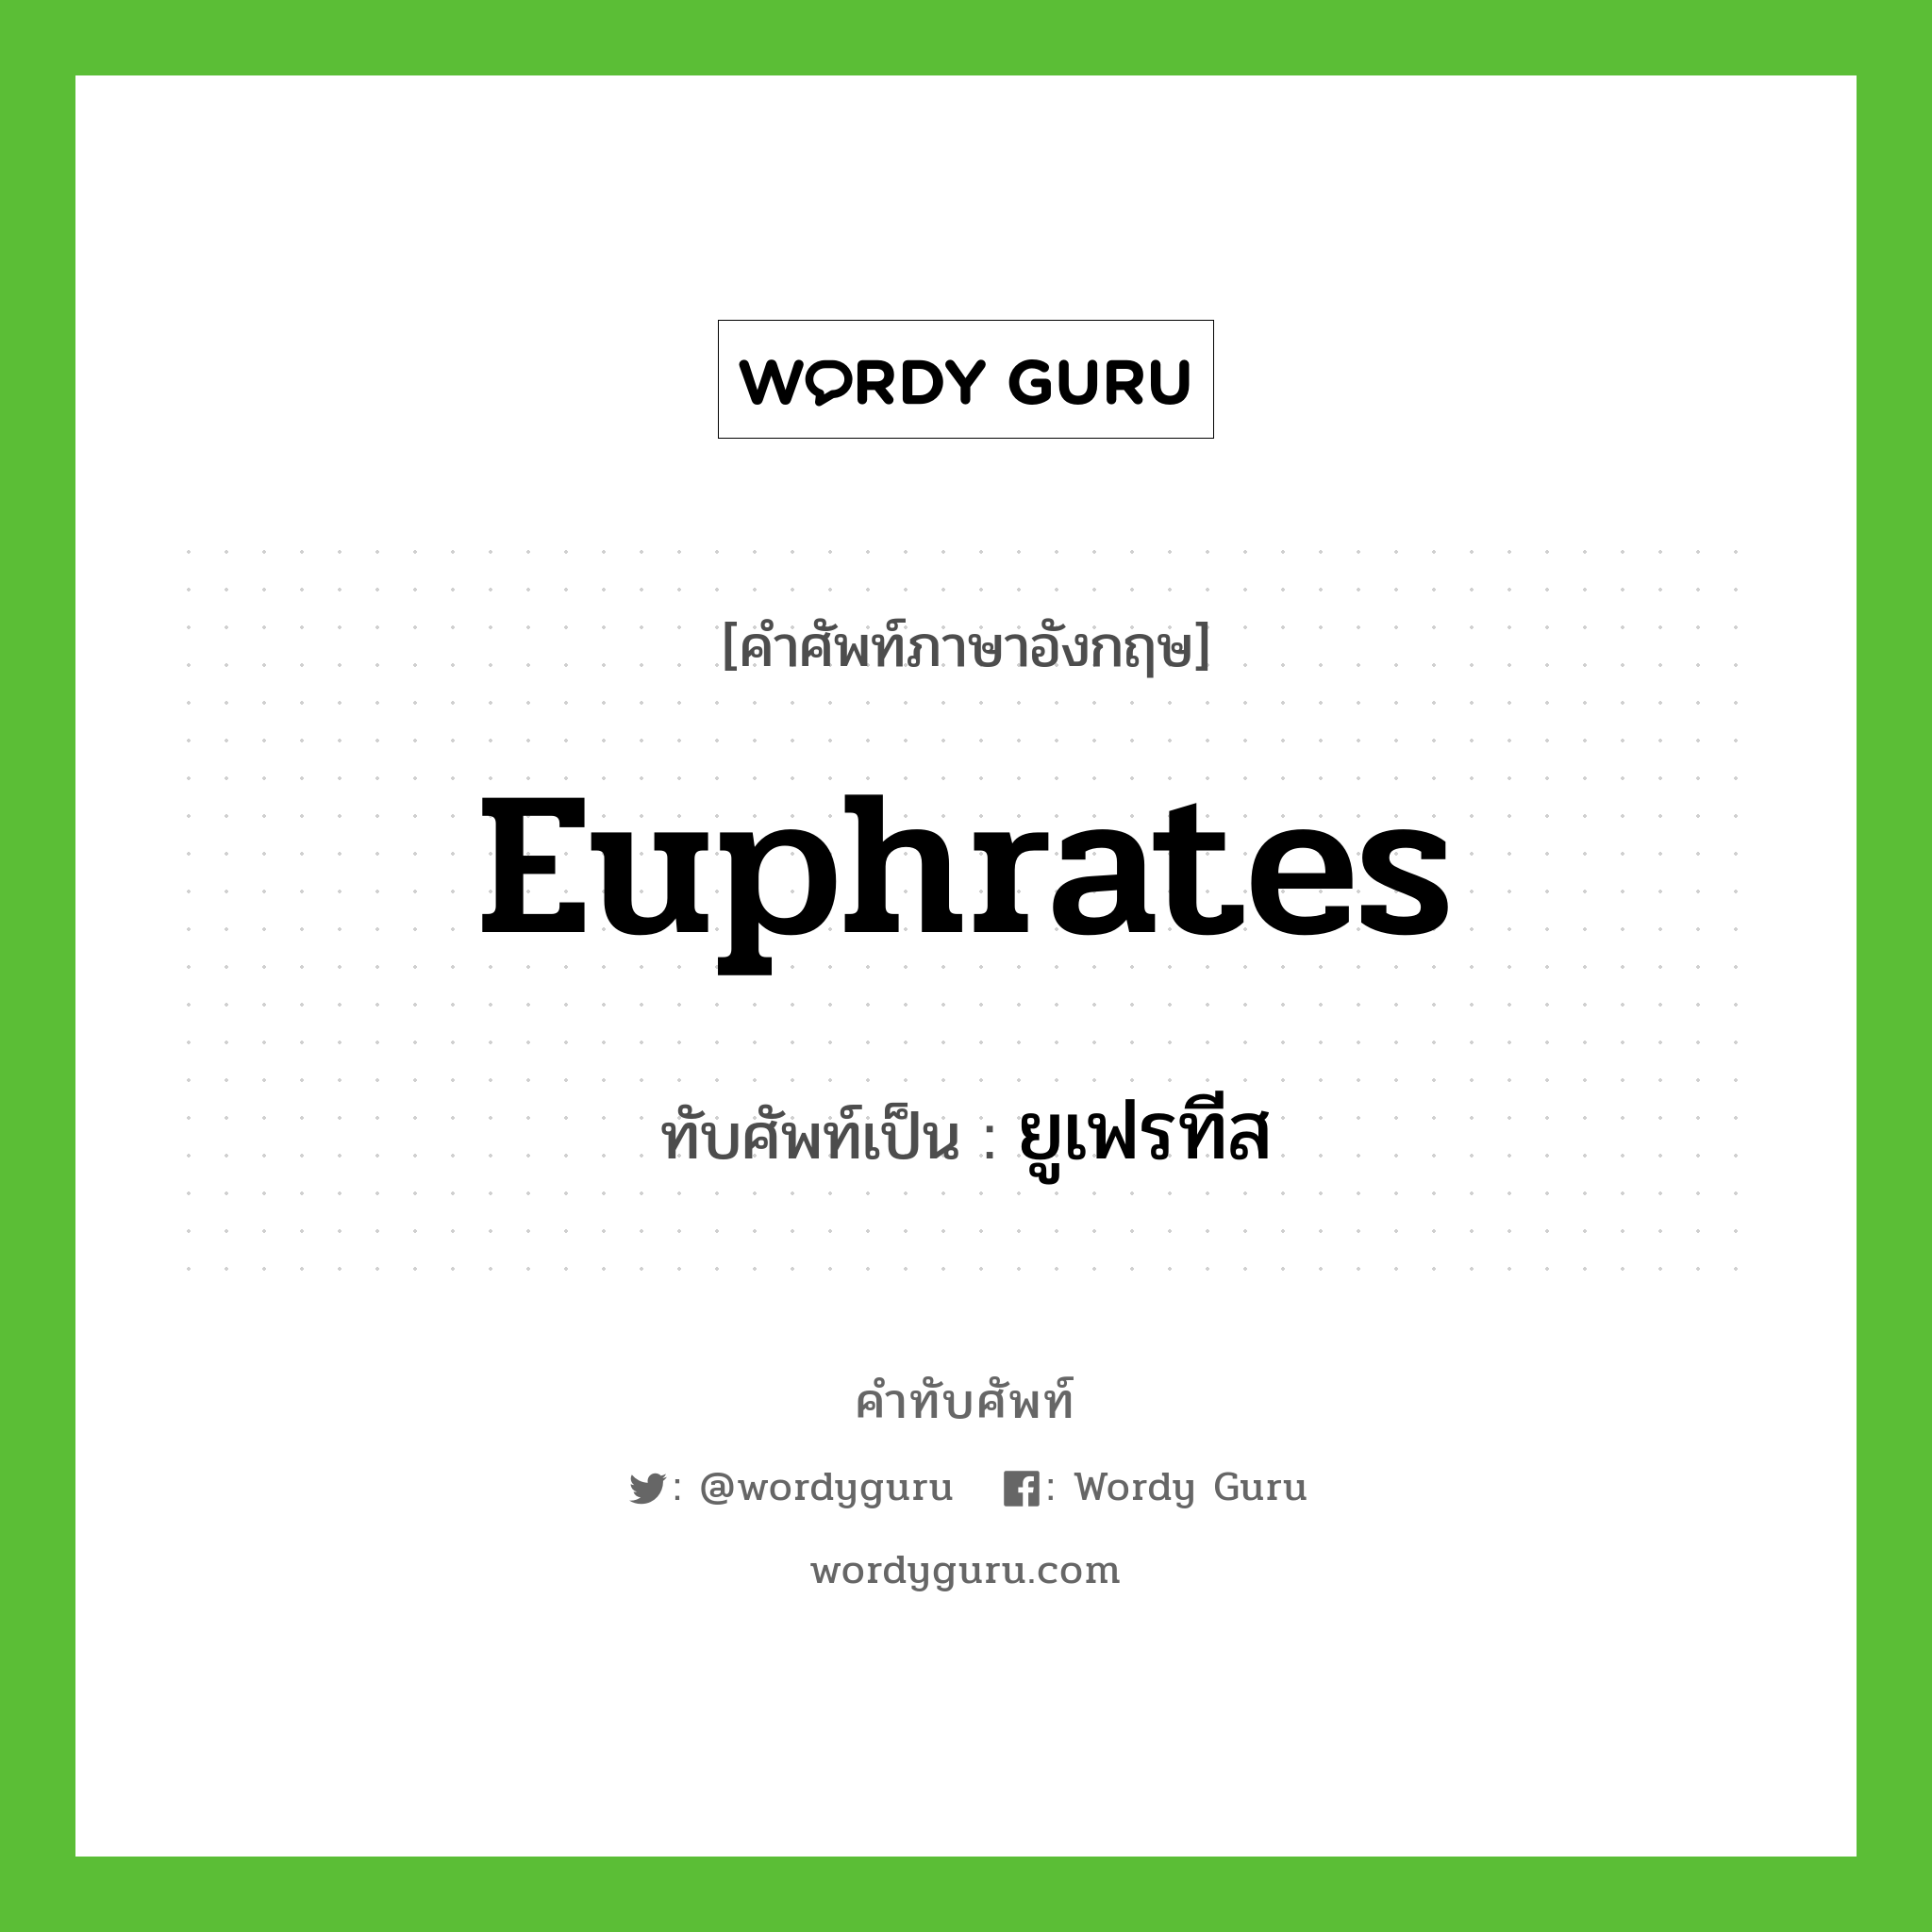 Euphrates เขียนเป็นคำไทยว่าอะไร?, คำศัพท์ภาษาอังกฤษ Euphrates ทับศัพท์เป็น ยูเฟรทีส